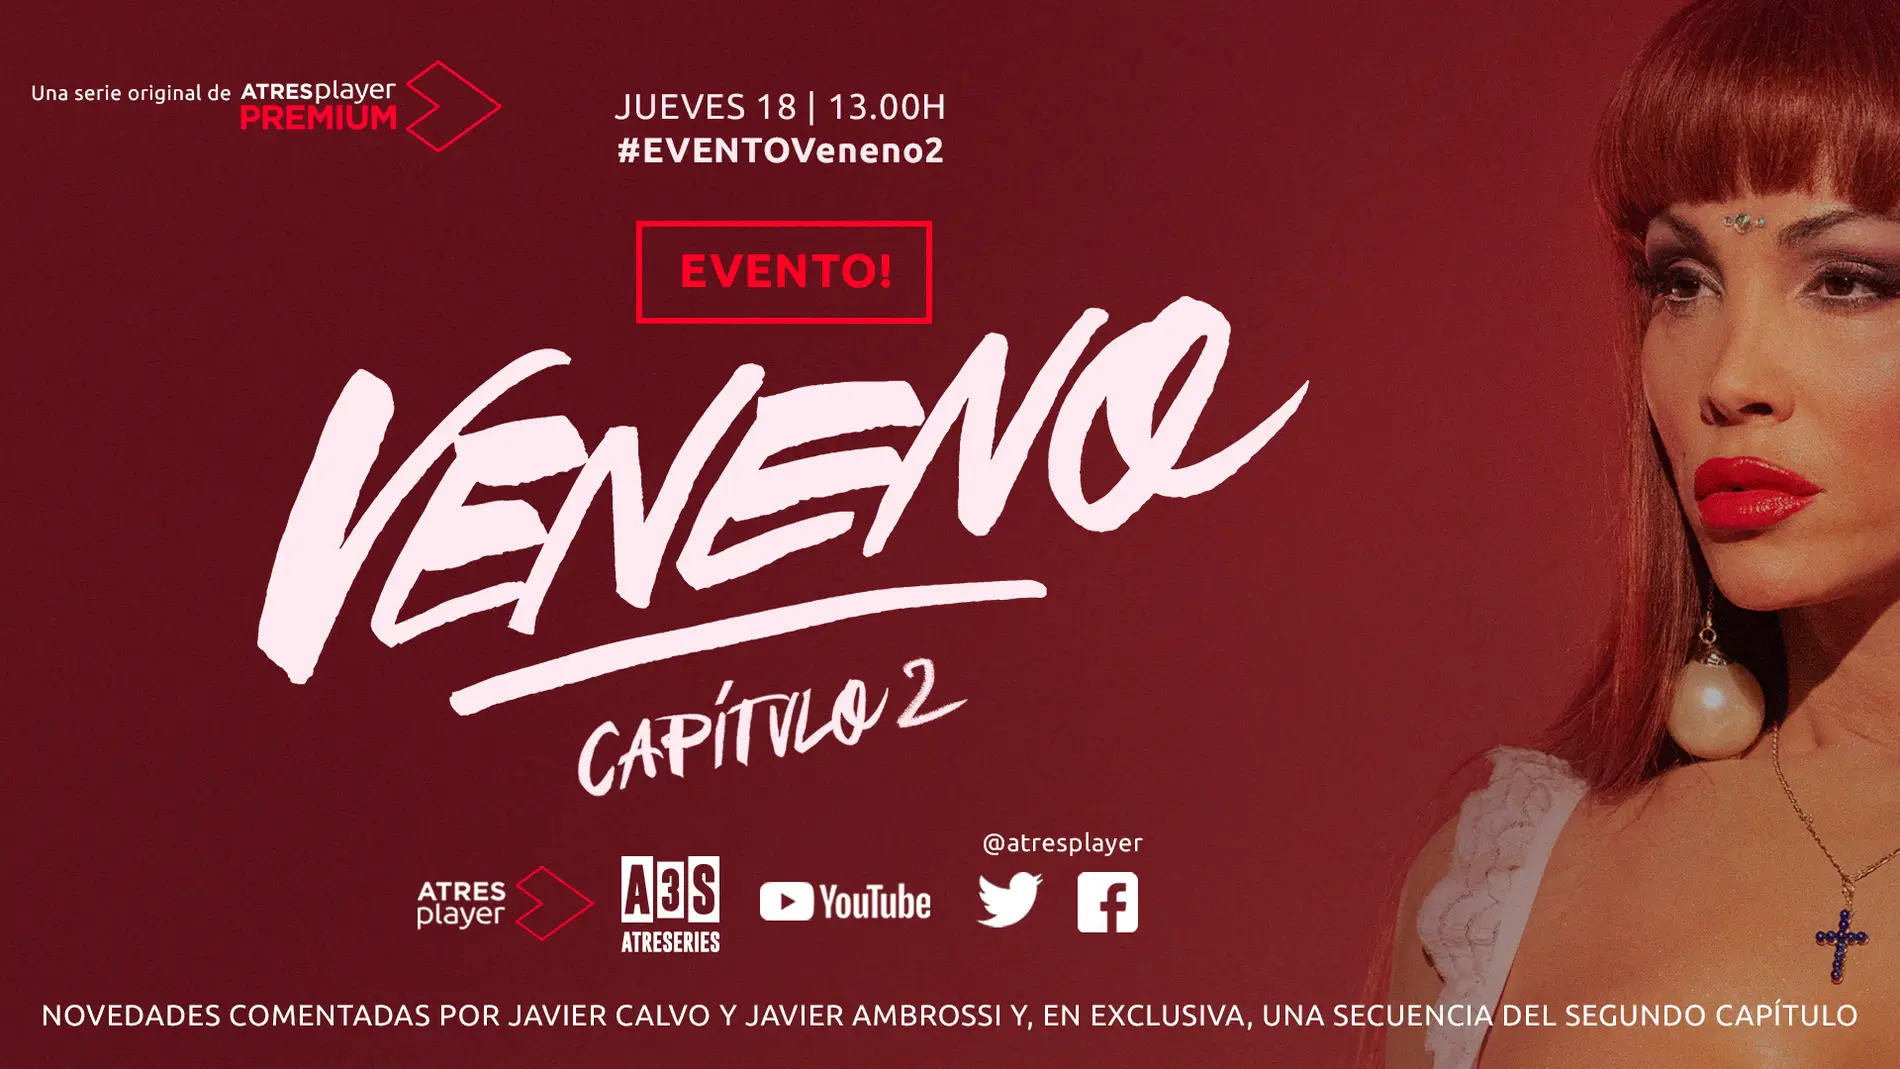 El 18 de junio tienes una cita con Javier Calvo y Javier Ambrossi en 'EVENTO! Veneno Capítulo 2'